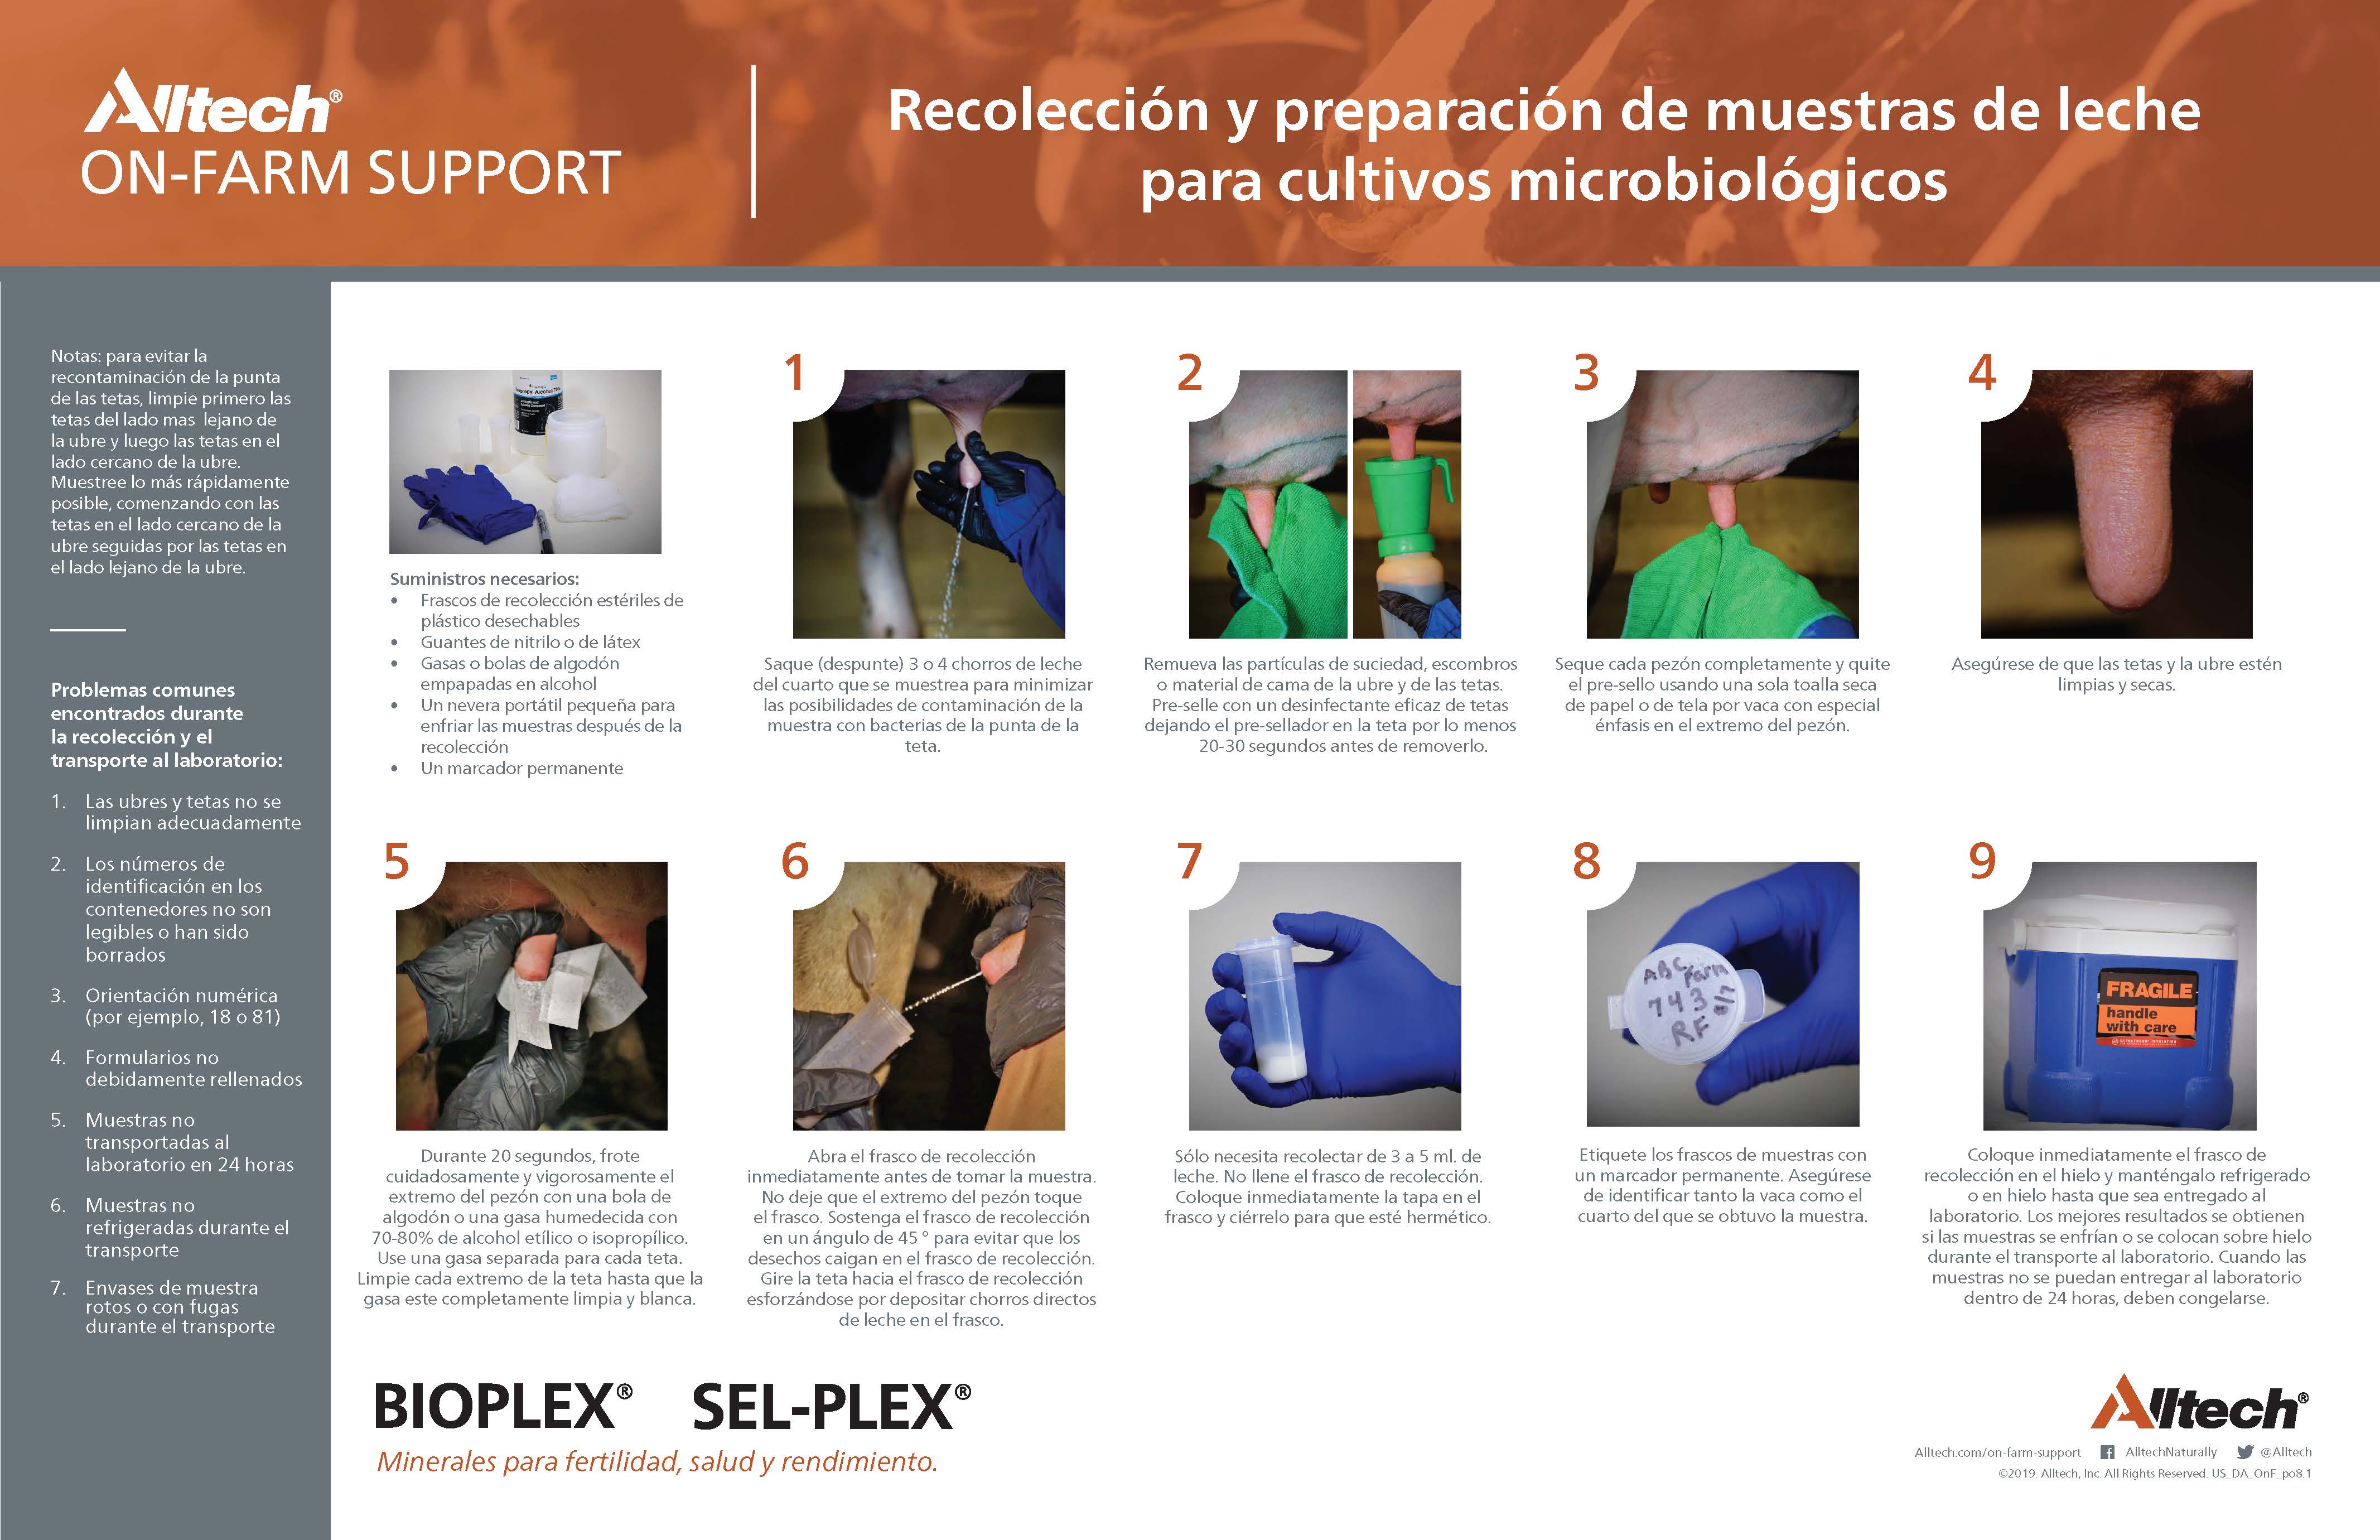 Recolección y preparación de muestras de leche para cultivos microbiológicos (PDF - Español)